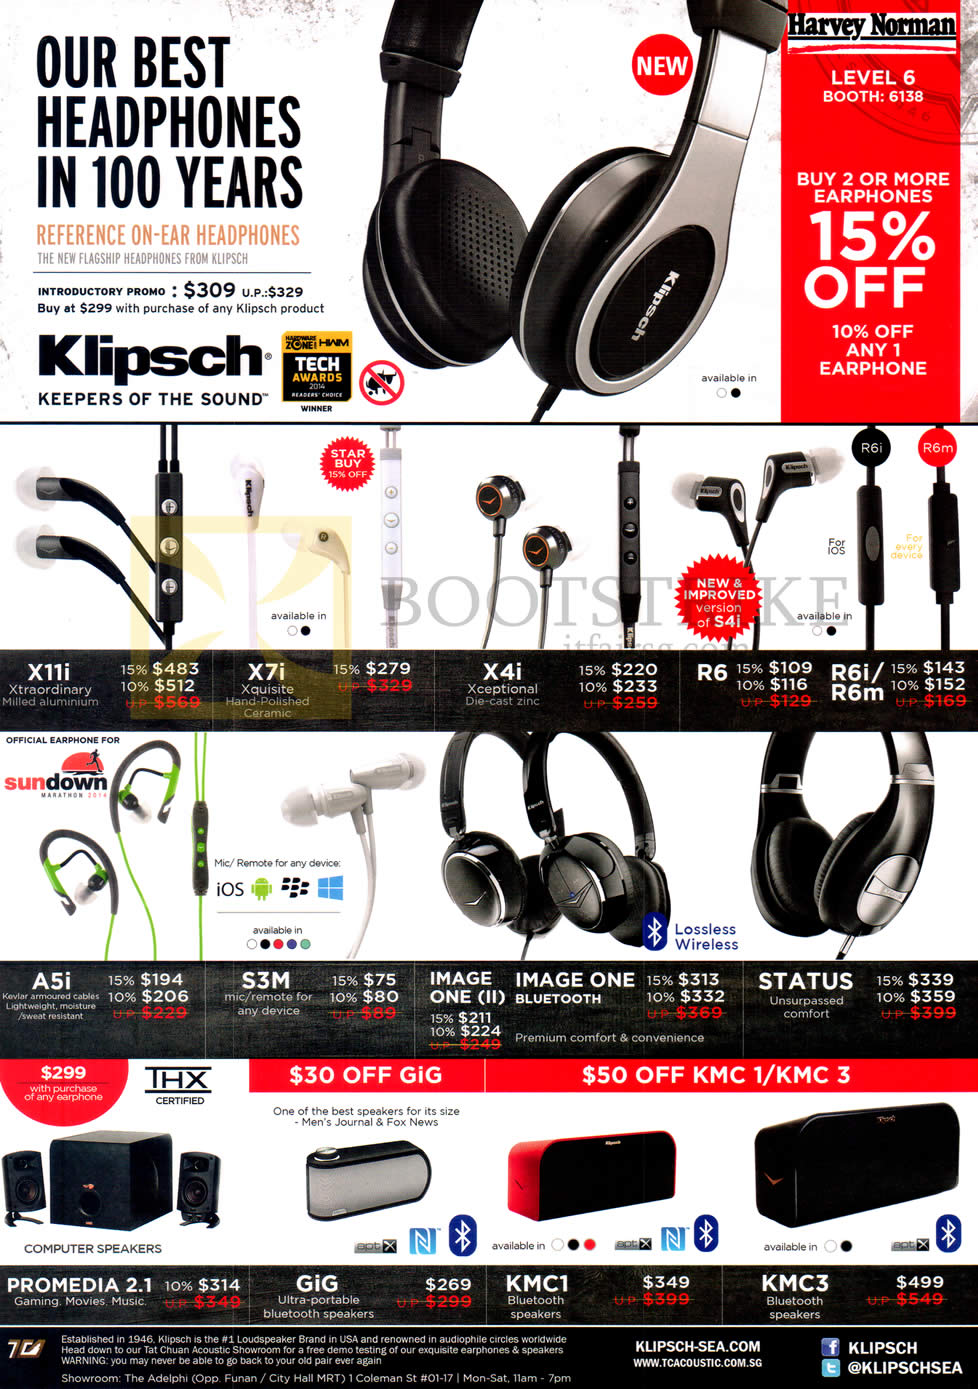 IT SHOW 2015 price list image brochure of Harvey Norman Klipsch Earphones, Headphones, Speakers, X11i, X7i, X4i, R6, R6i, R6m, A5i, S3M, Image One II, Bluetooth, Status, Promedia 2.1, Gig, KMC1, KMC3